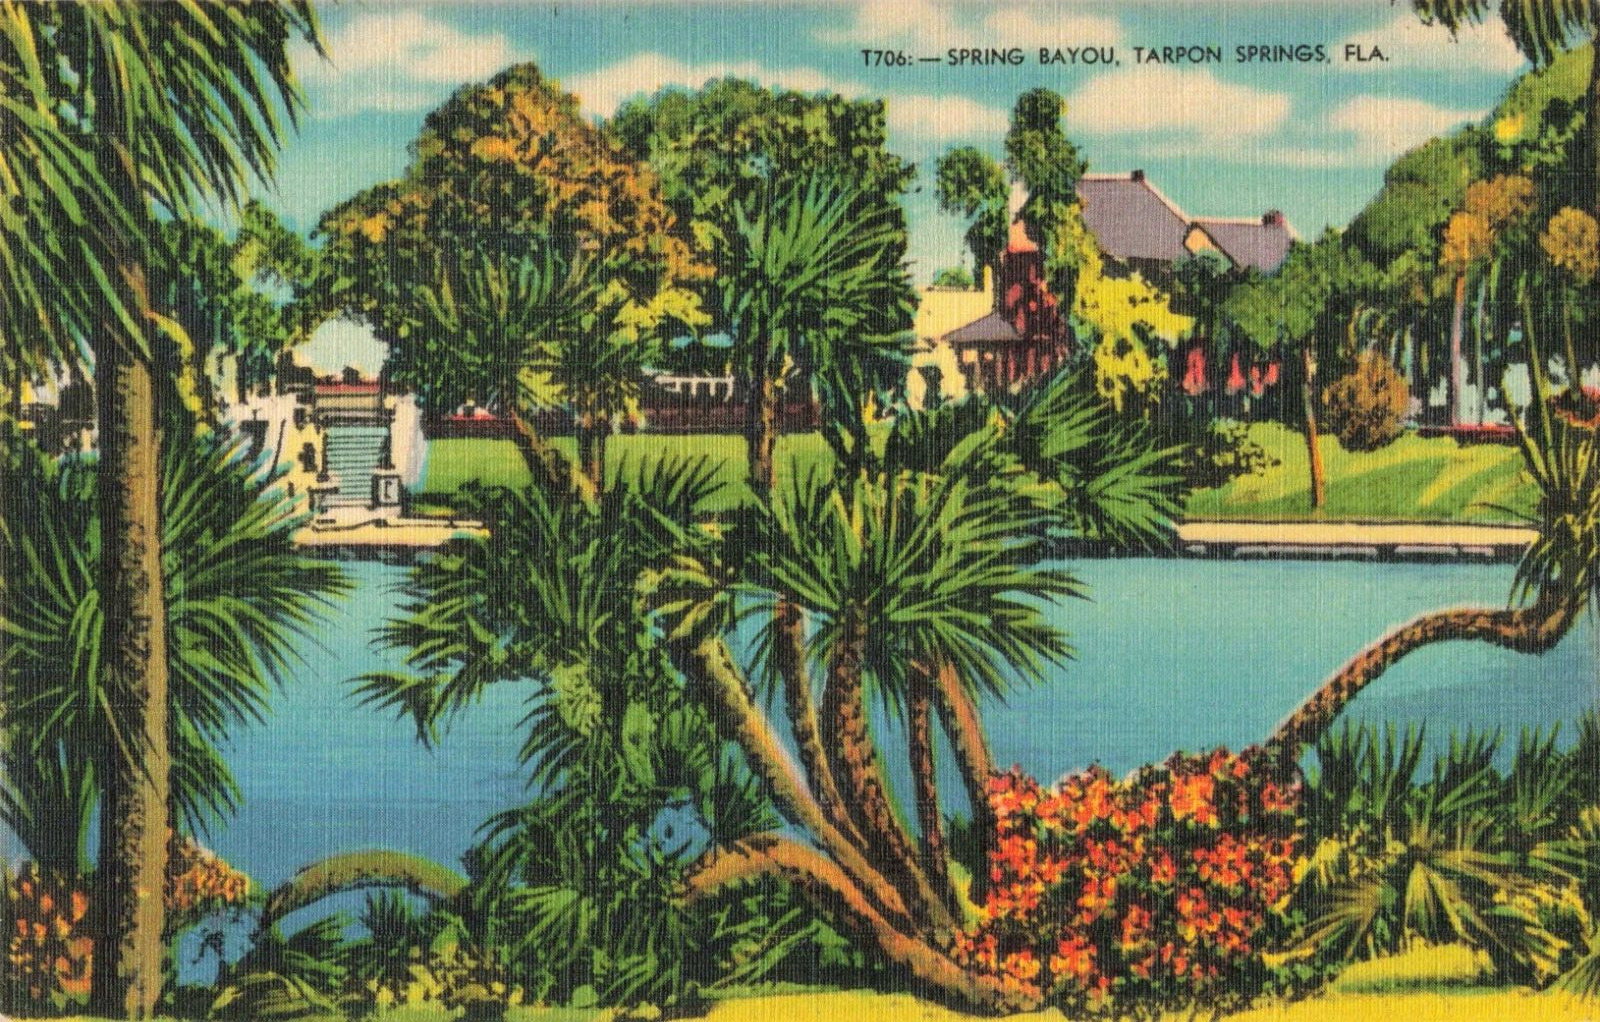 Tarpon Springs FL Florida, Lush Residential Spring Bayou, Vintage Postcard